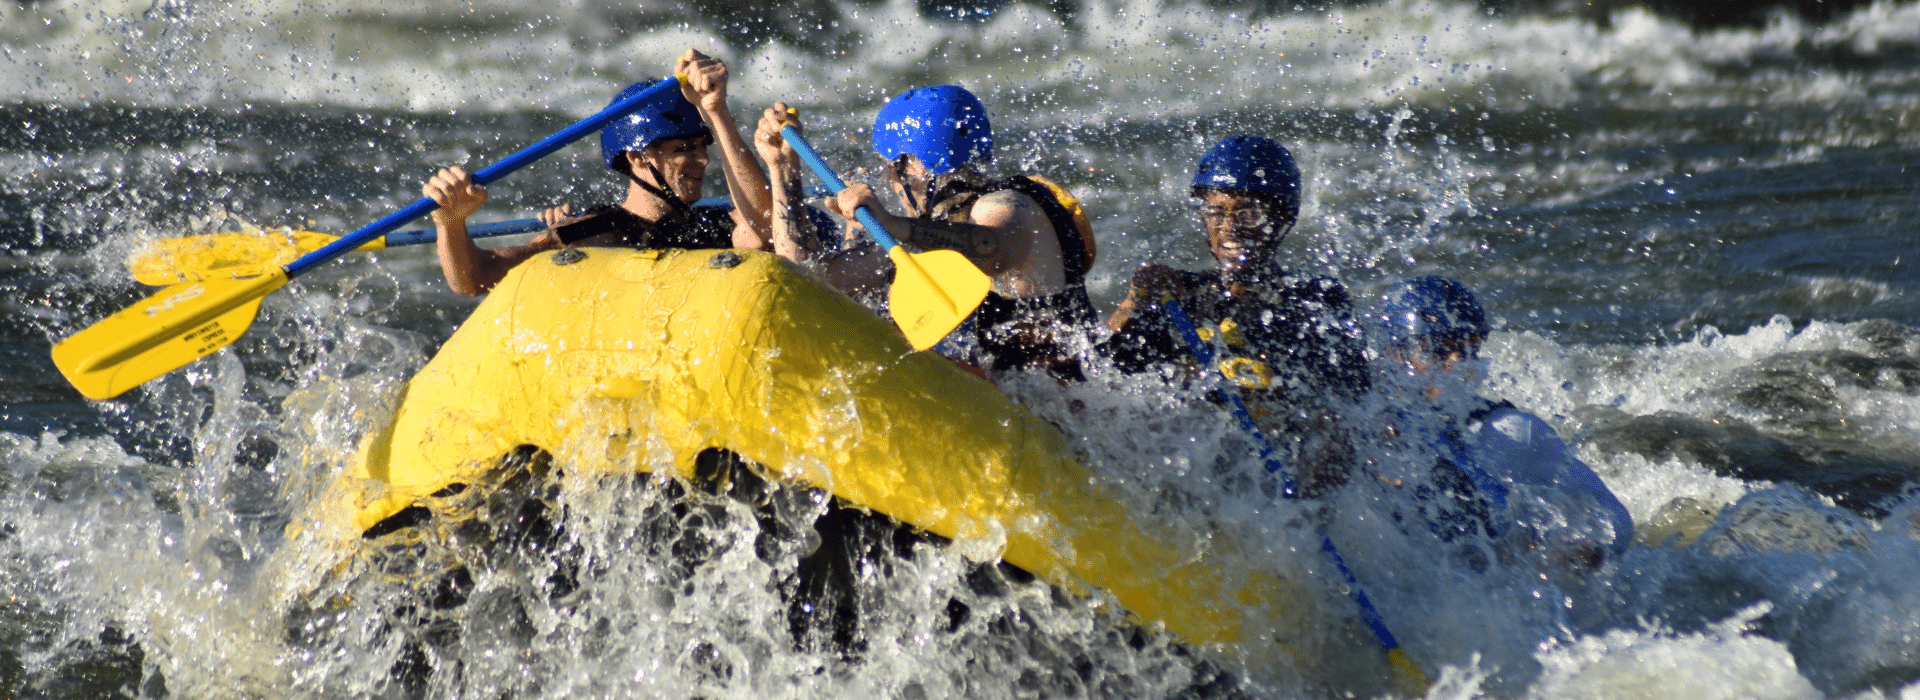 Chattahoochee River Rafting